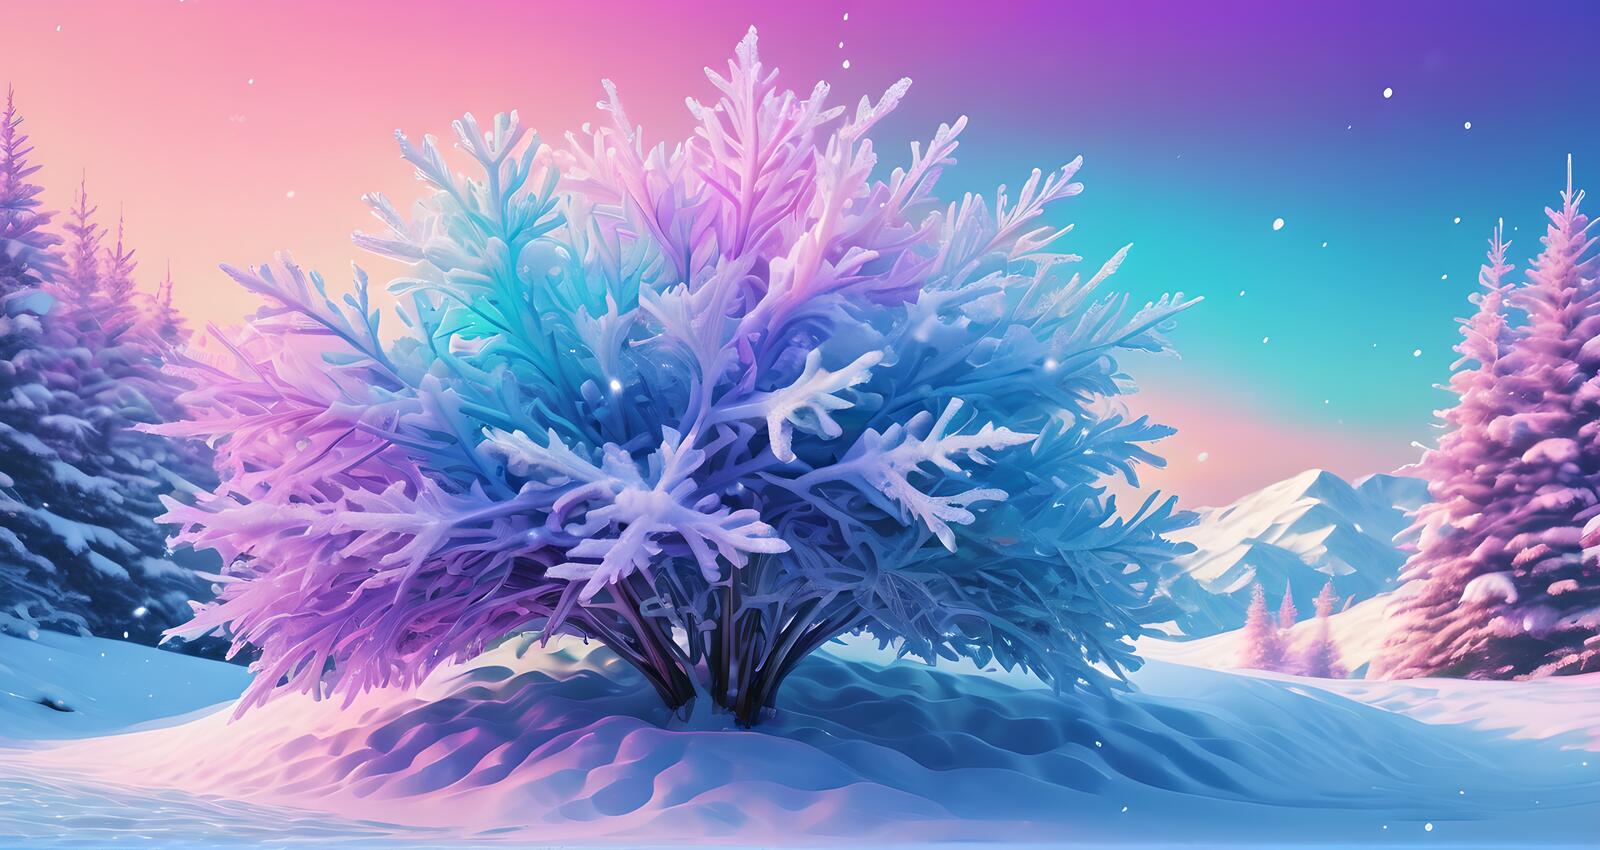 Бесплатное фото Снежное дерево